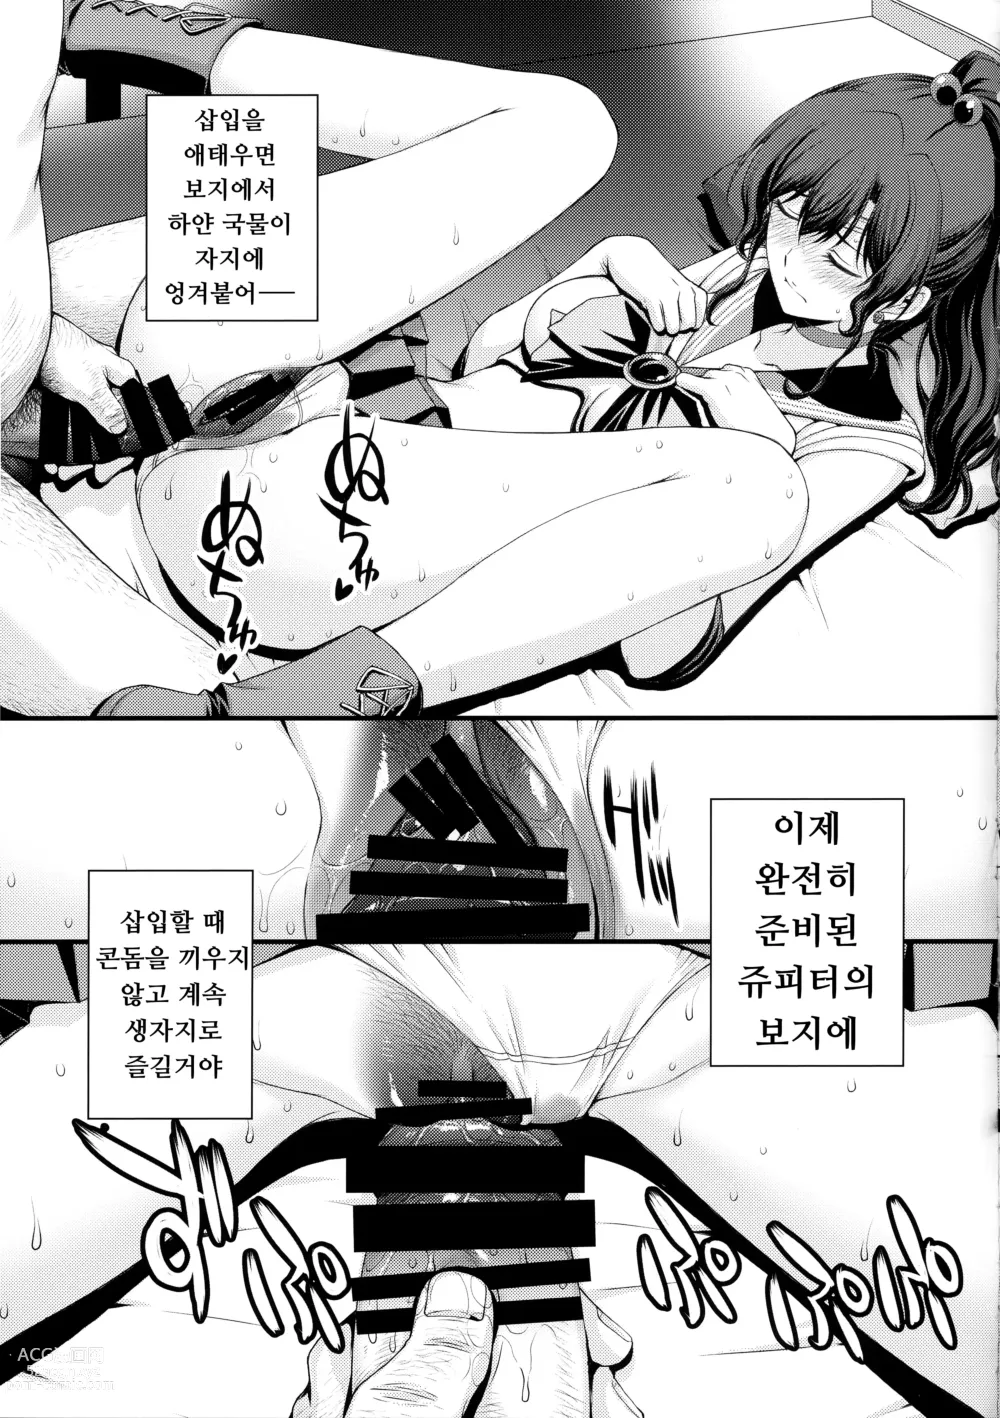 Page 41 of doujinshi 호타루의 의사선생님 놀이